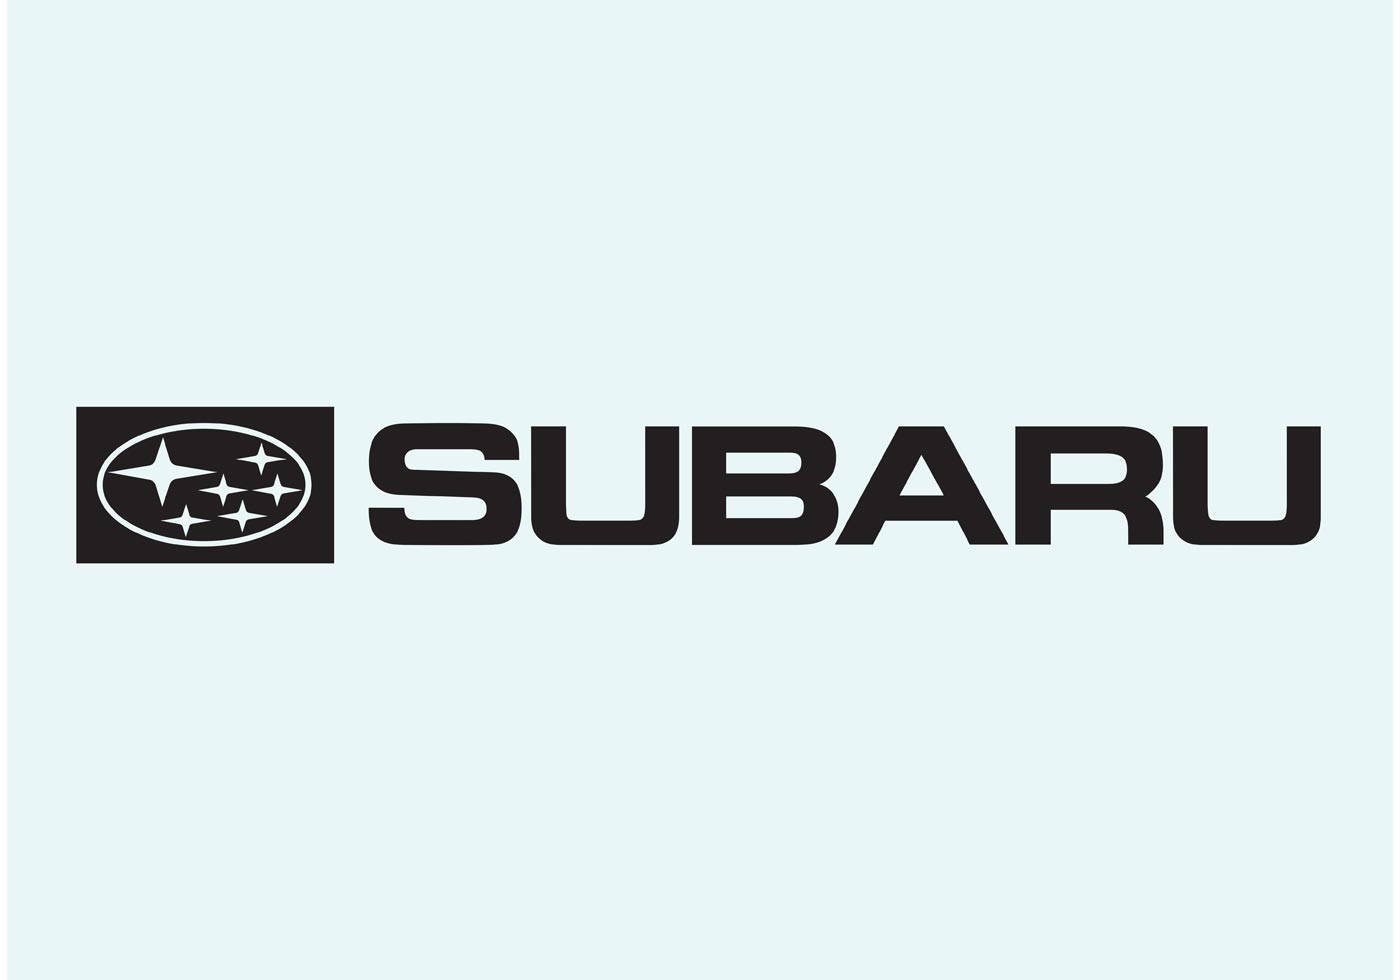 Logode Subaru En Fuente Negra Fondo de pantalla